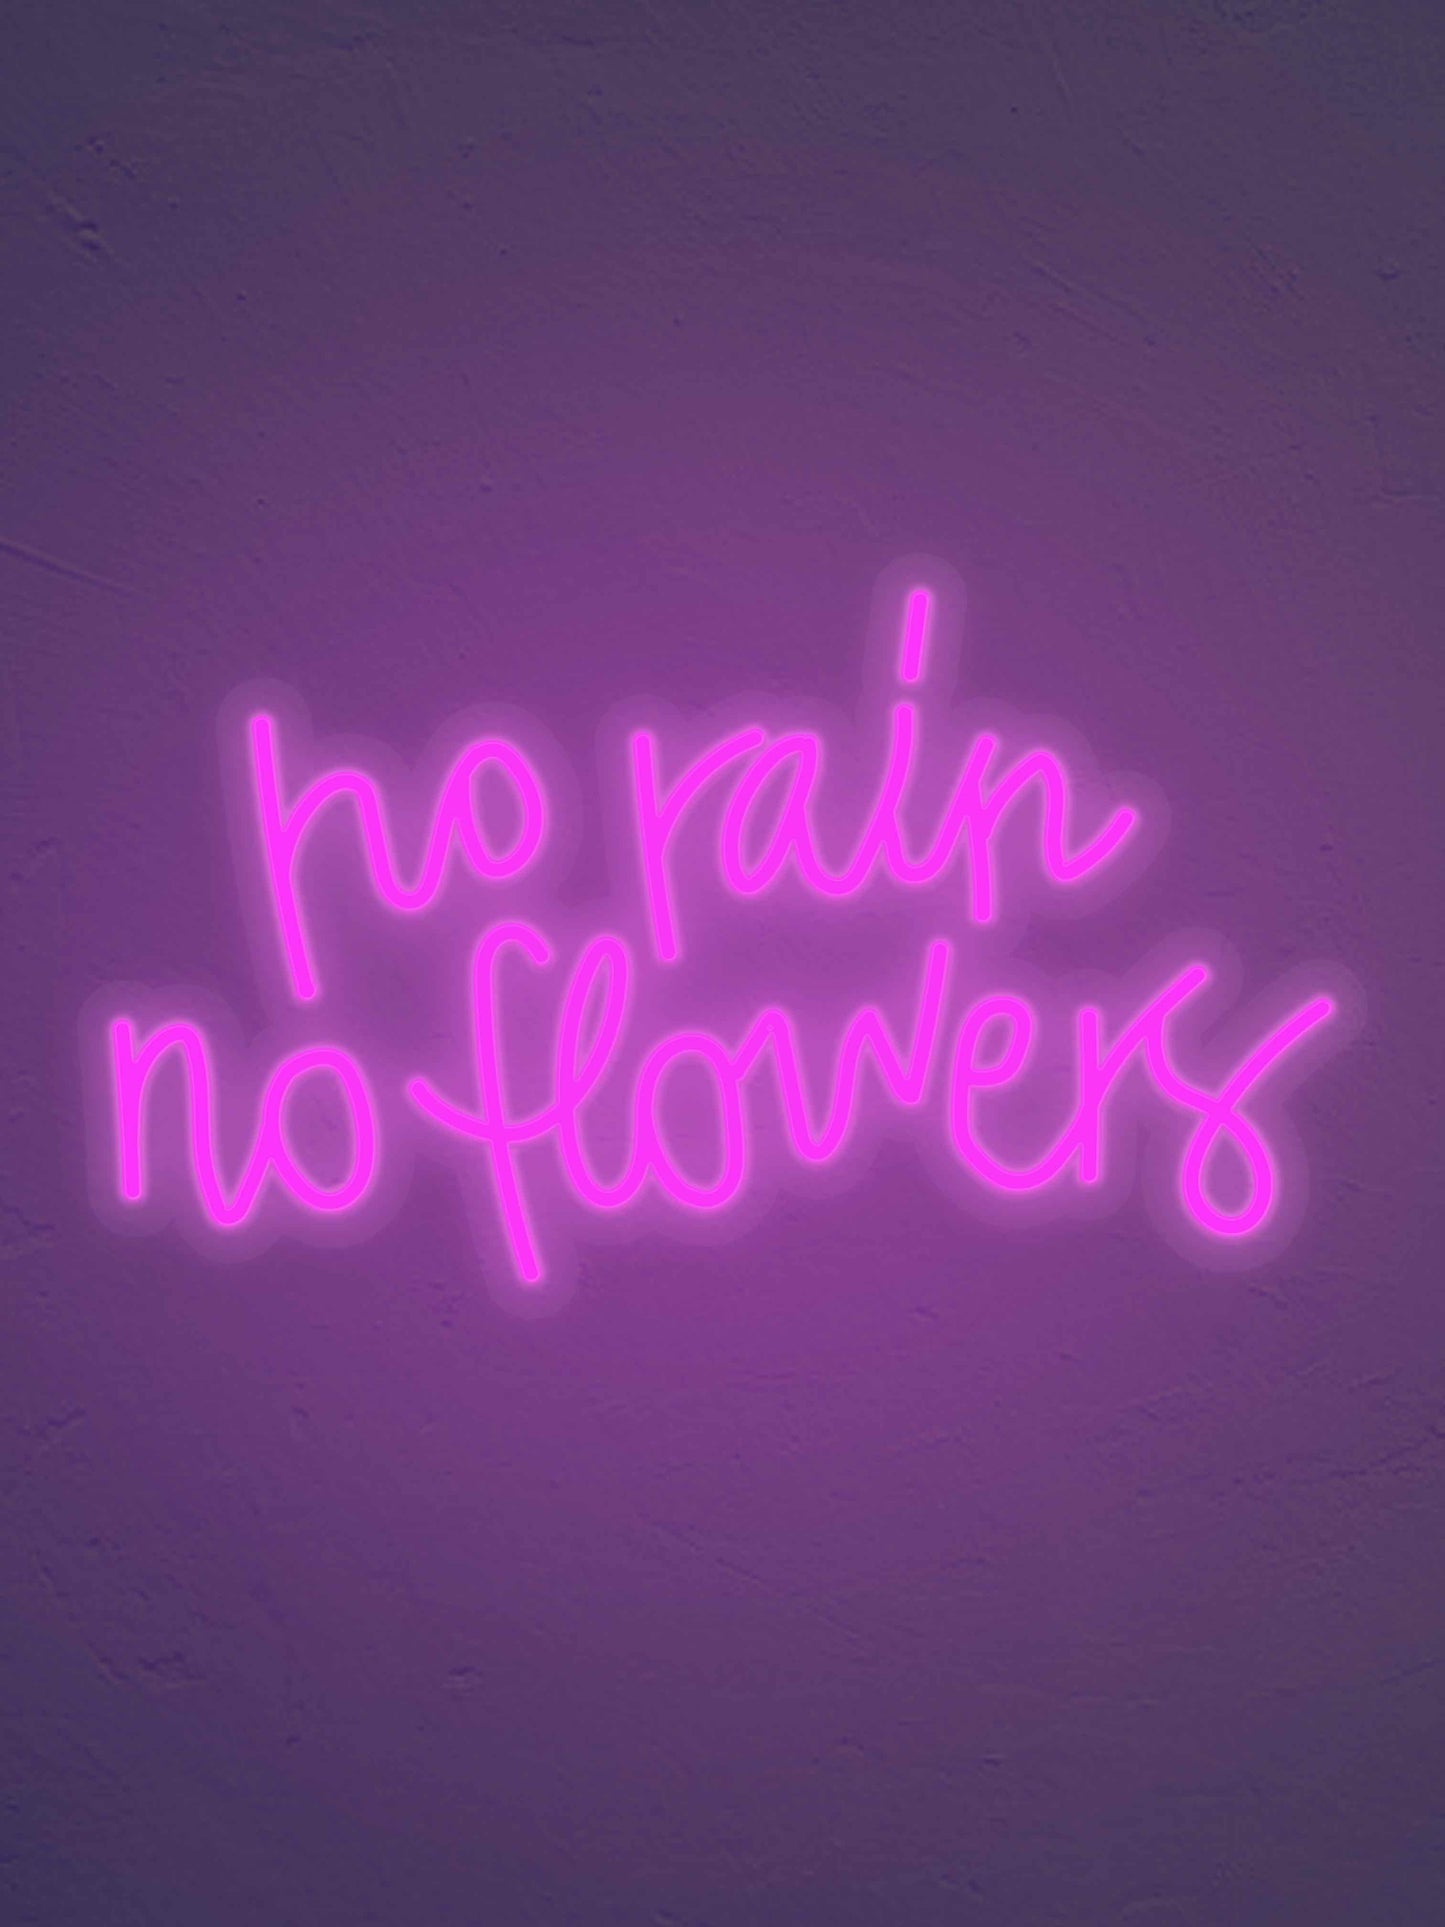 No Rain No flowers